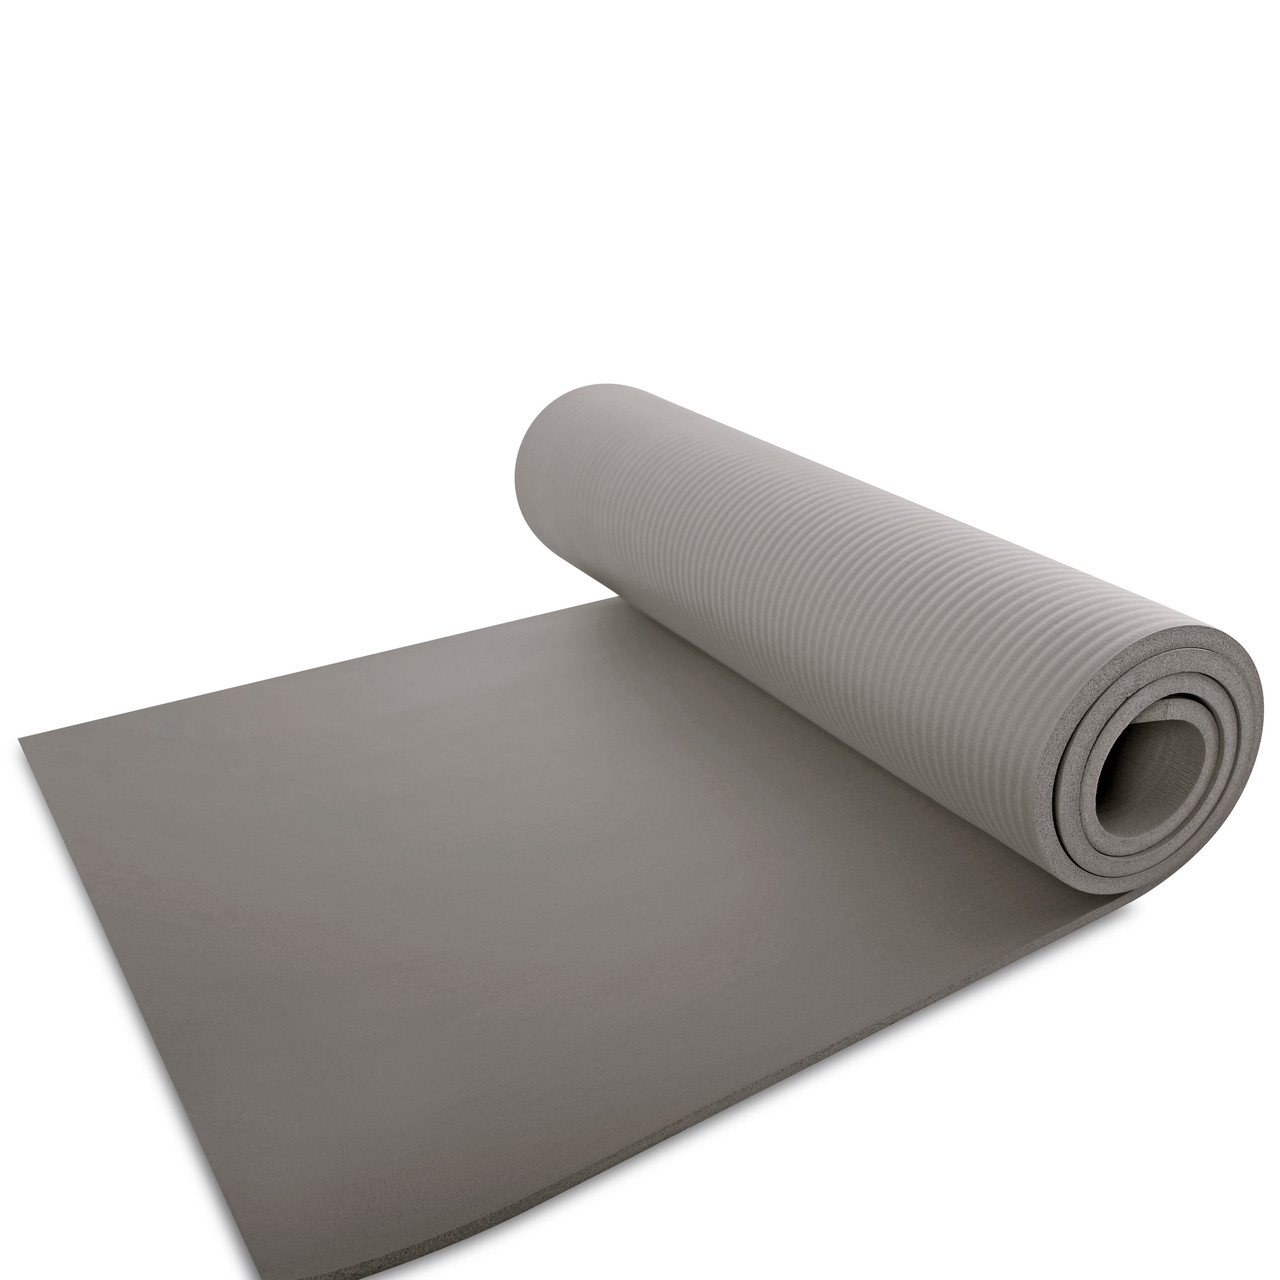 white exercise mat